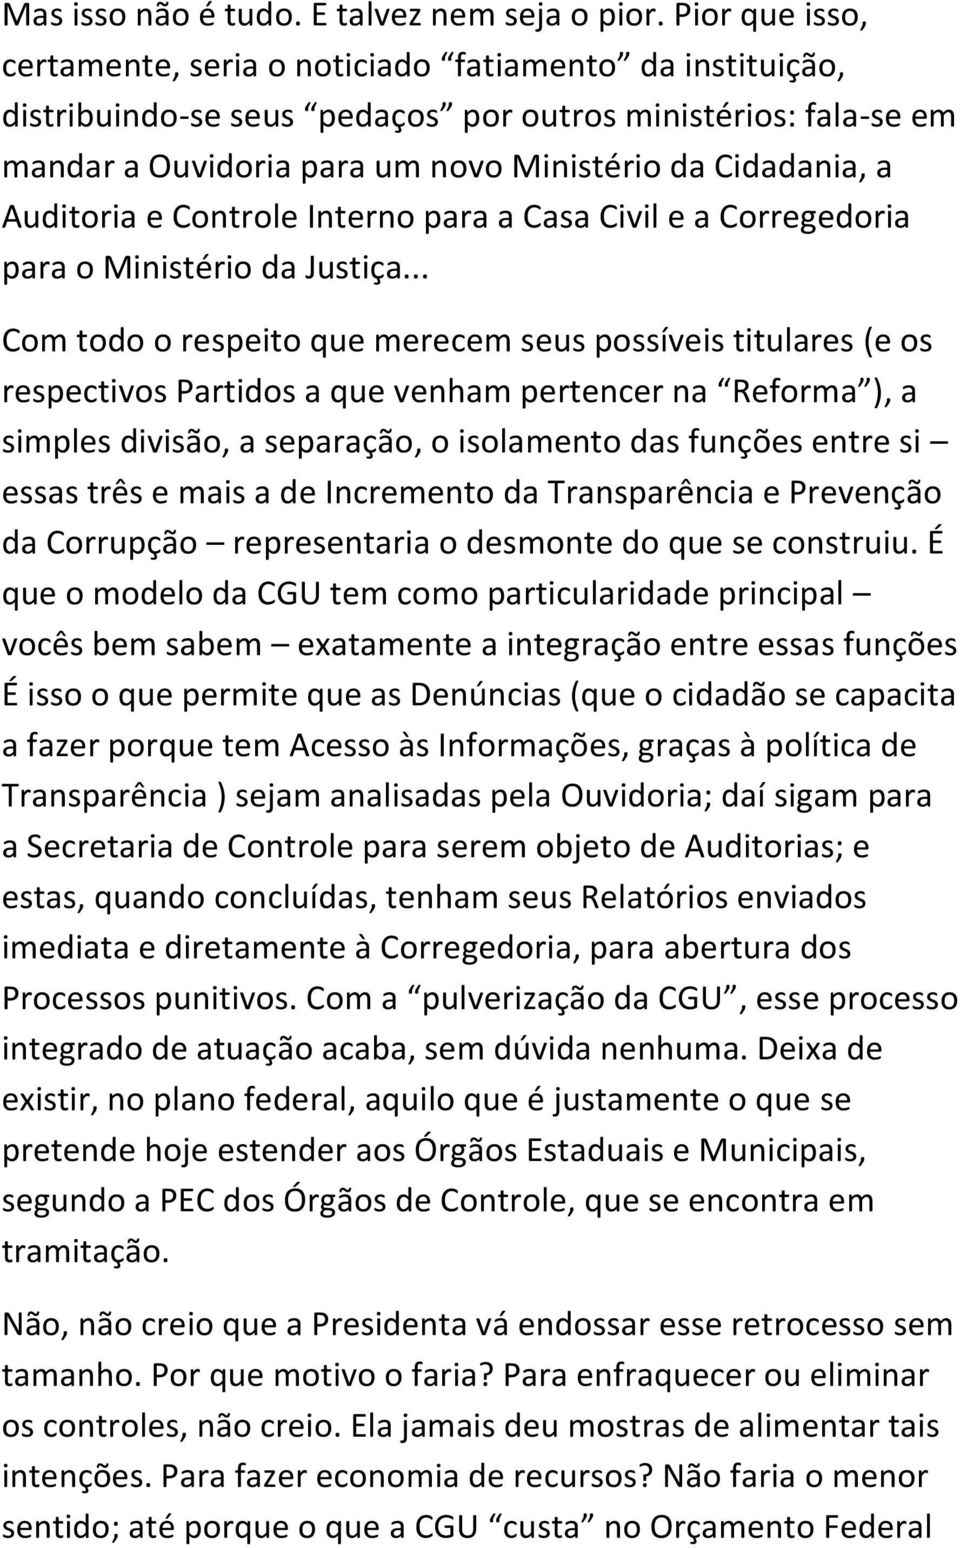 Auditoria e Controle Interno para a Casa Civil e a Corregedoria para o Ministério da Justiça.